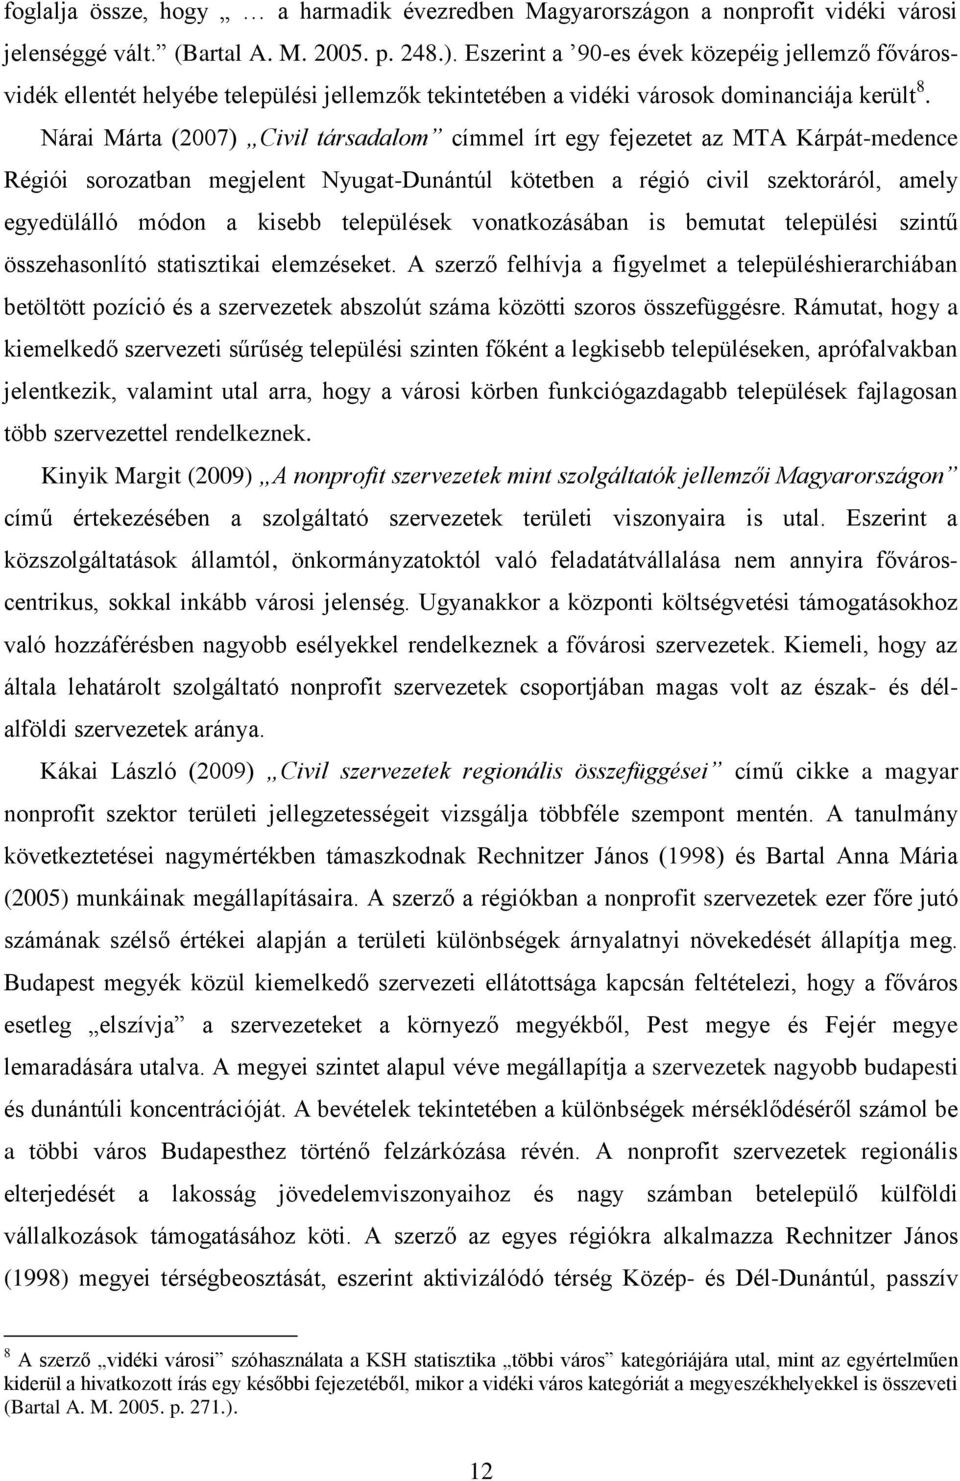 Nárai Márta (2007) Civil társadalom címmel írt egy fejezetet az MTA Kárpát-medence Régiói sorozatban megjelent Nyugat-Dunántúl kötetben a régió civil szektoráról, amely egyedülálló módon a kisebb